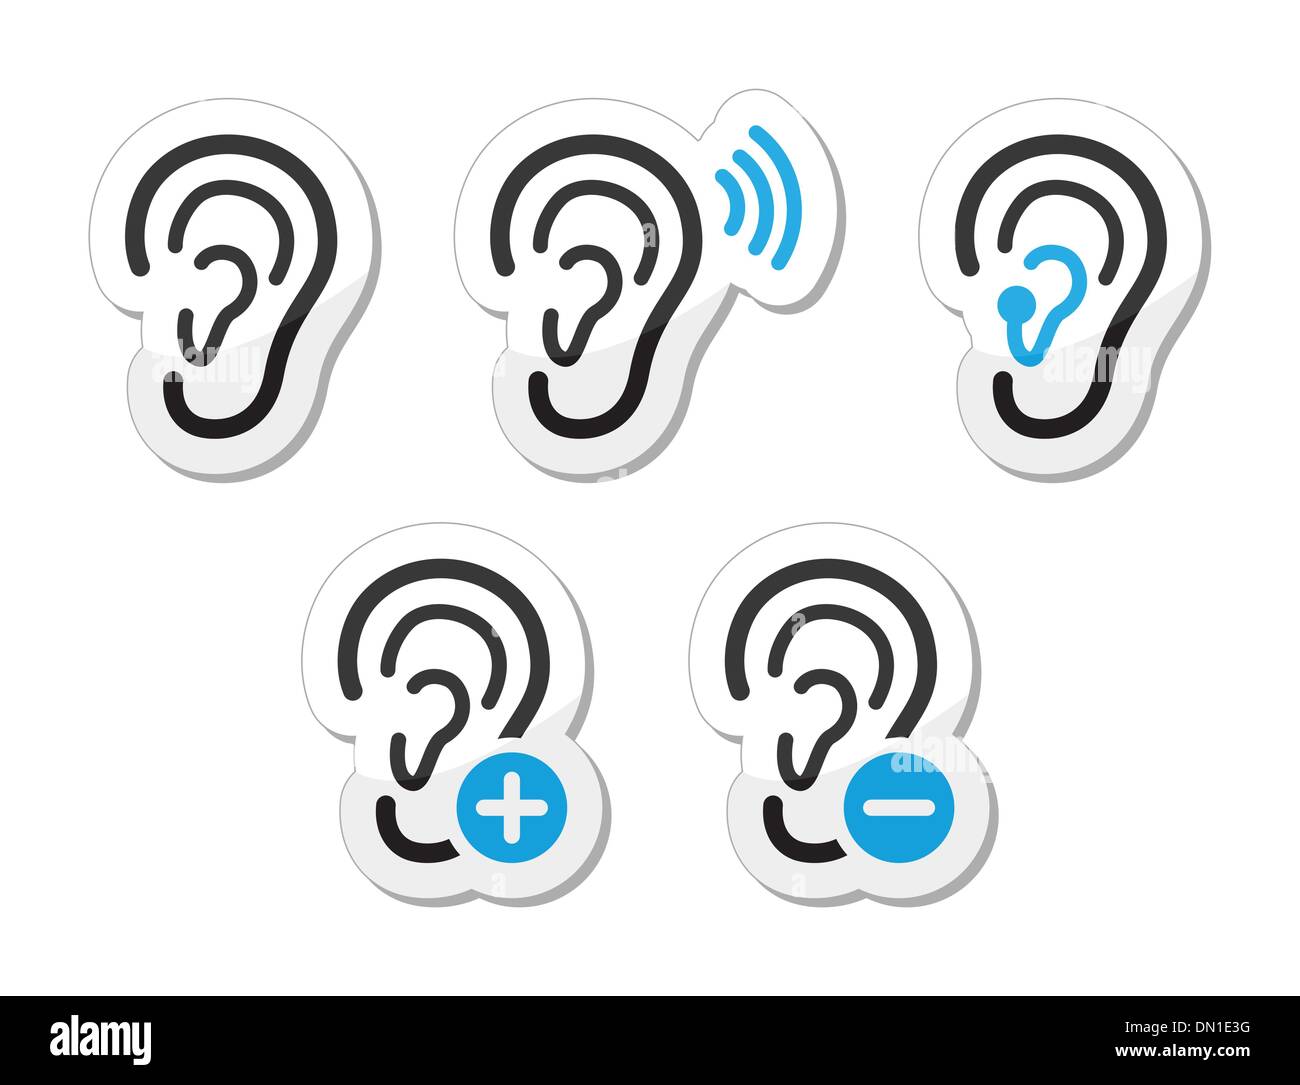 L'aide auditive de l'oreille problème sourds icons set en tant  qu'étiquettes Image Vectorielle Stock - Alamy